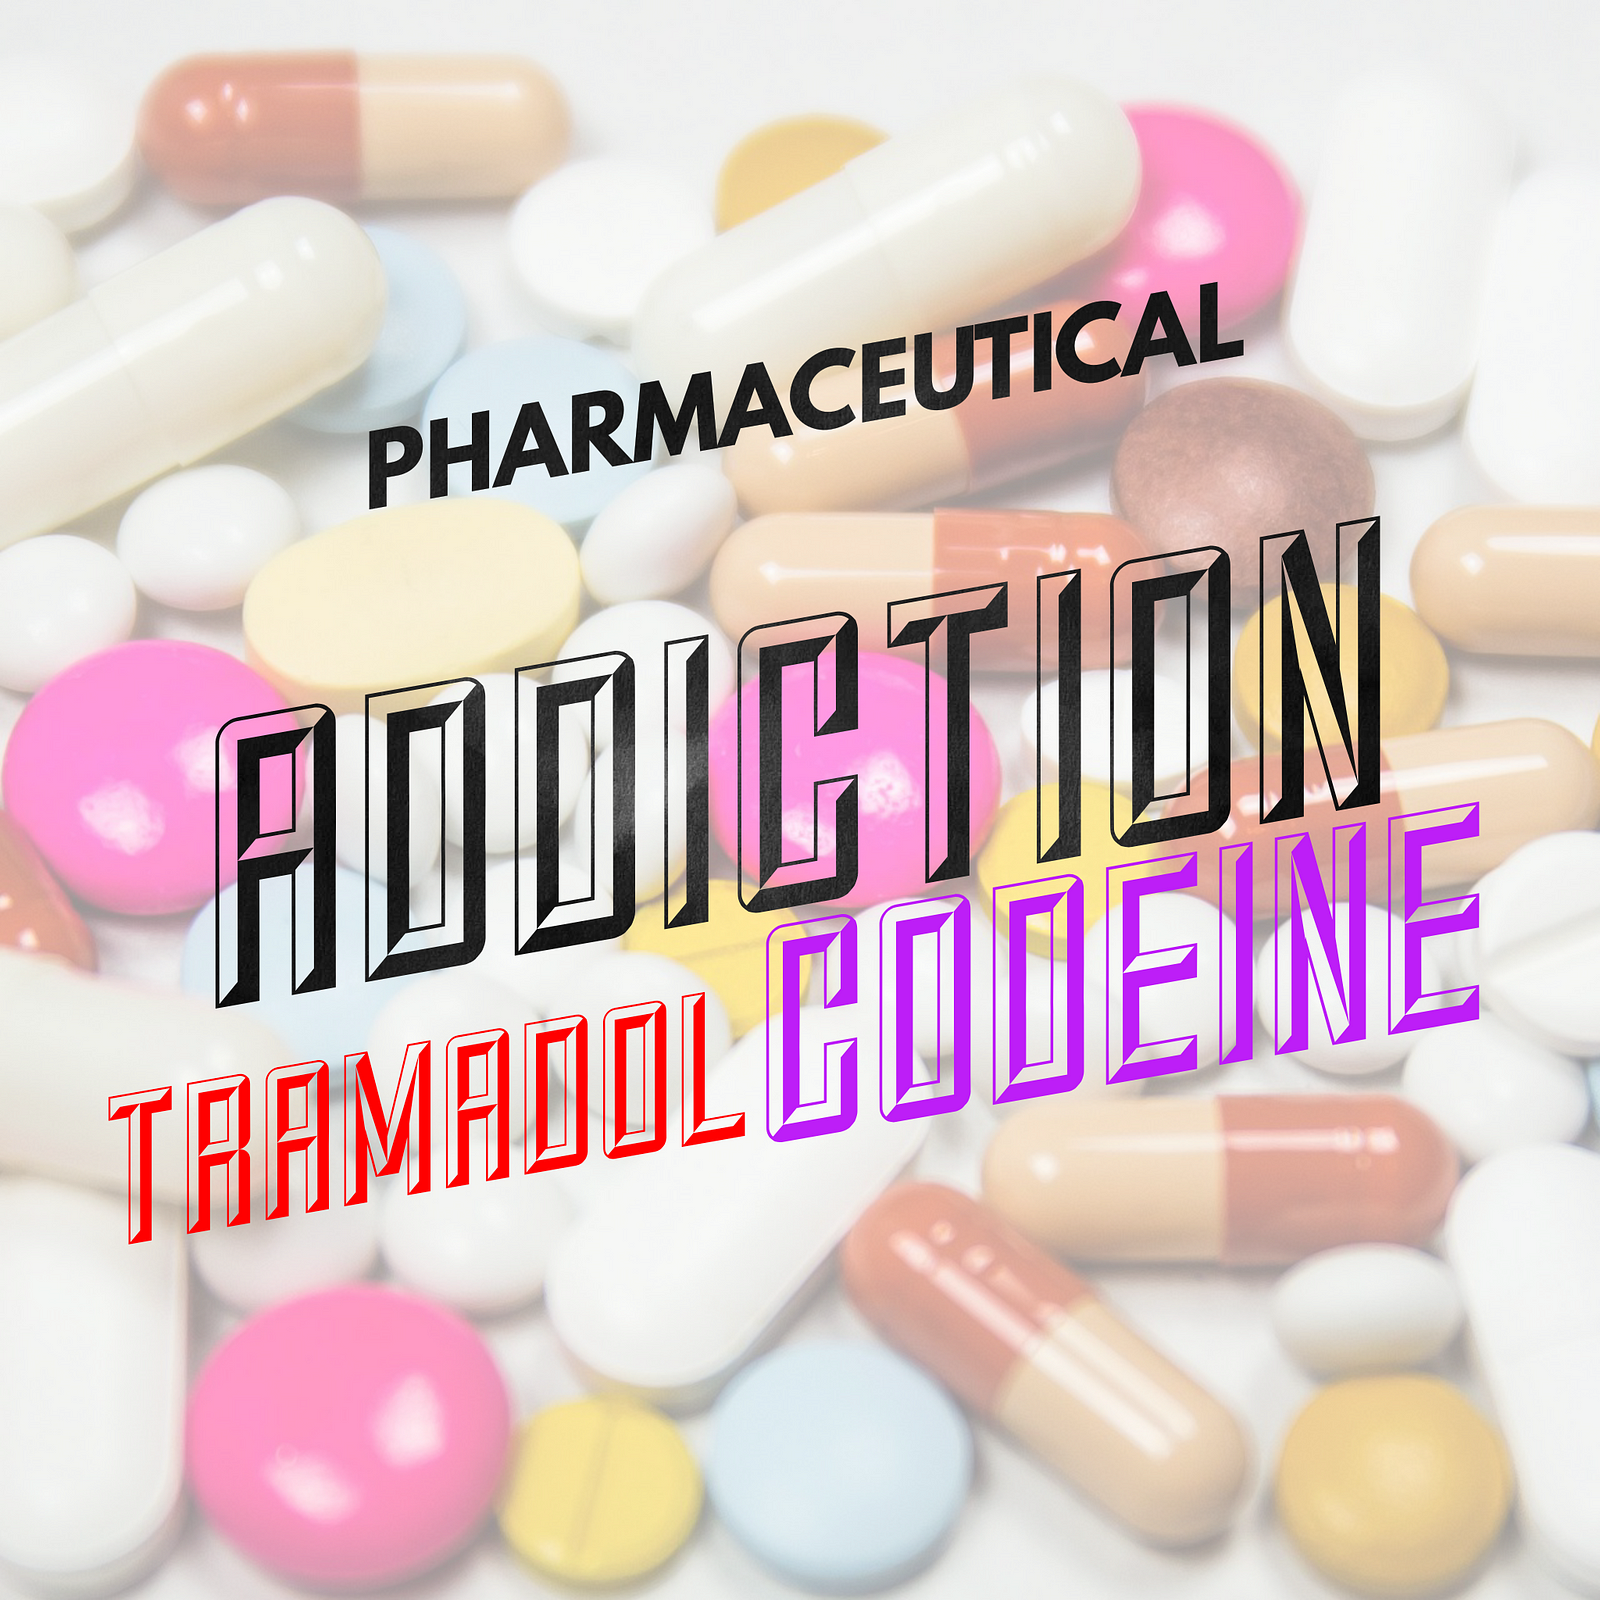 Tramadol mix with codeine